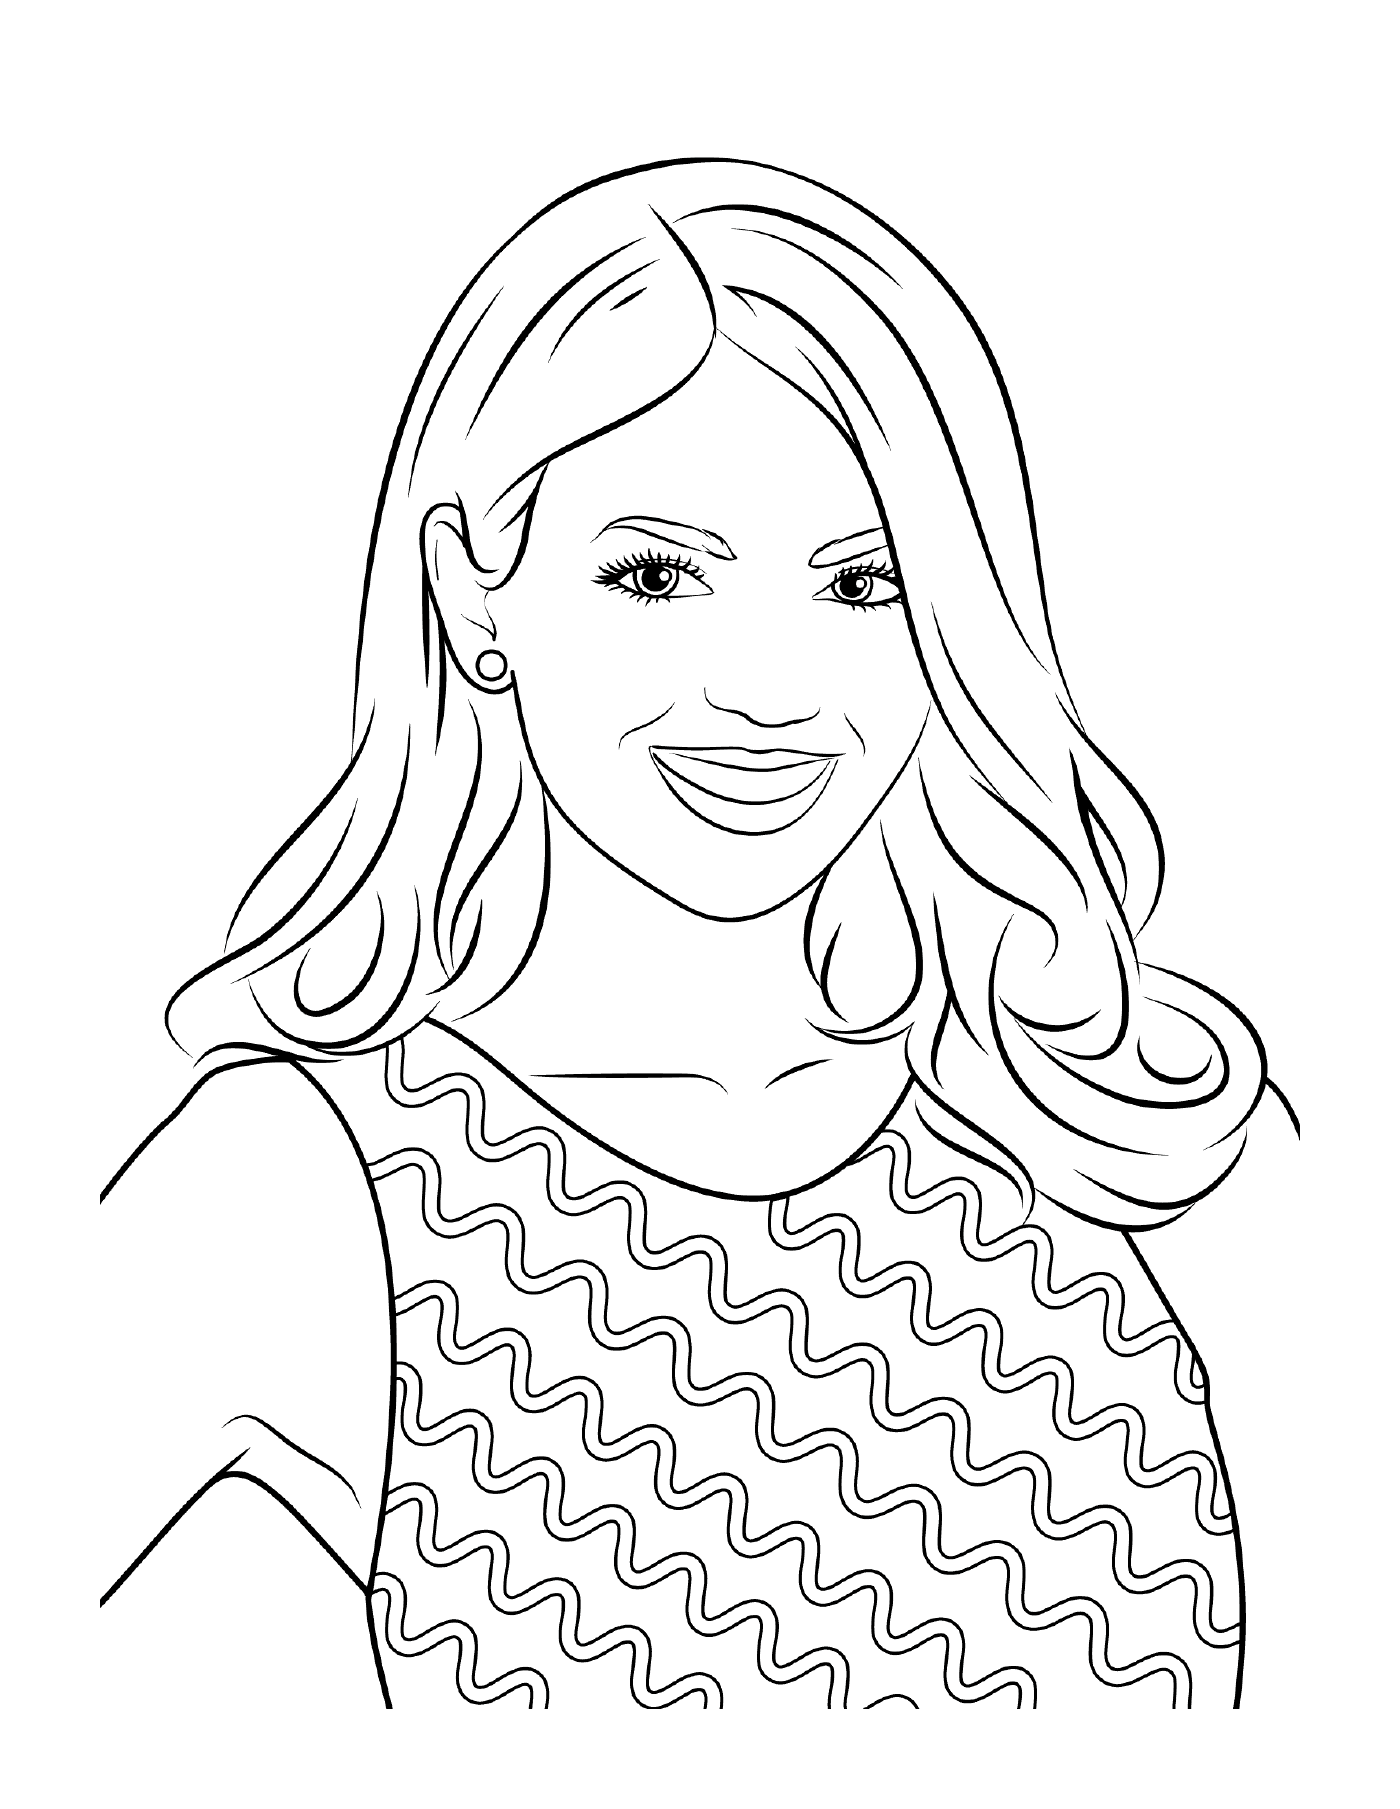  Victoria Justice, famosa stella, sorridente 